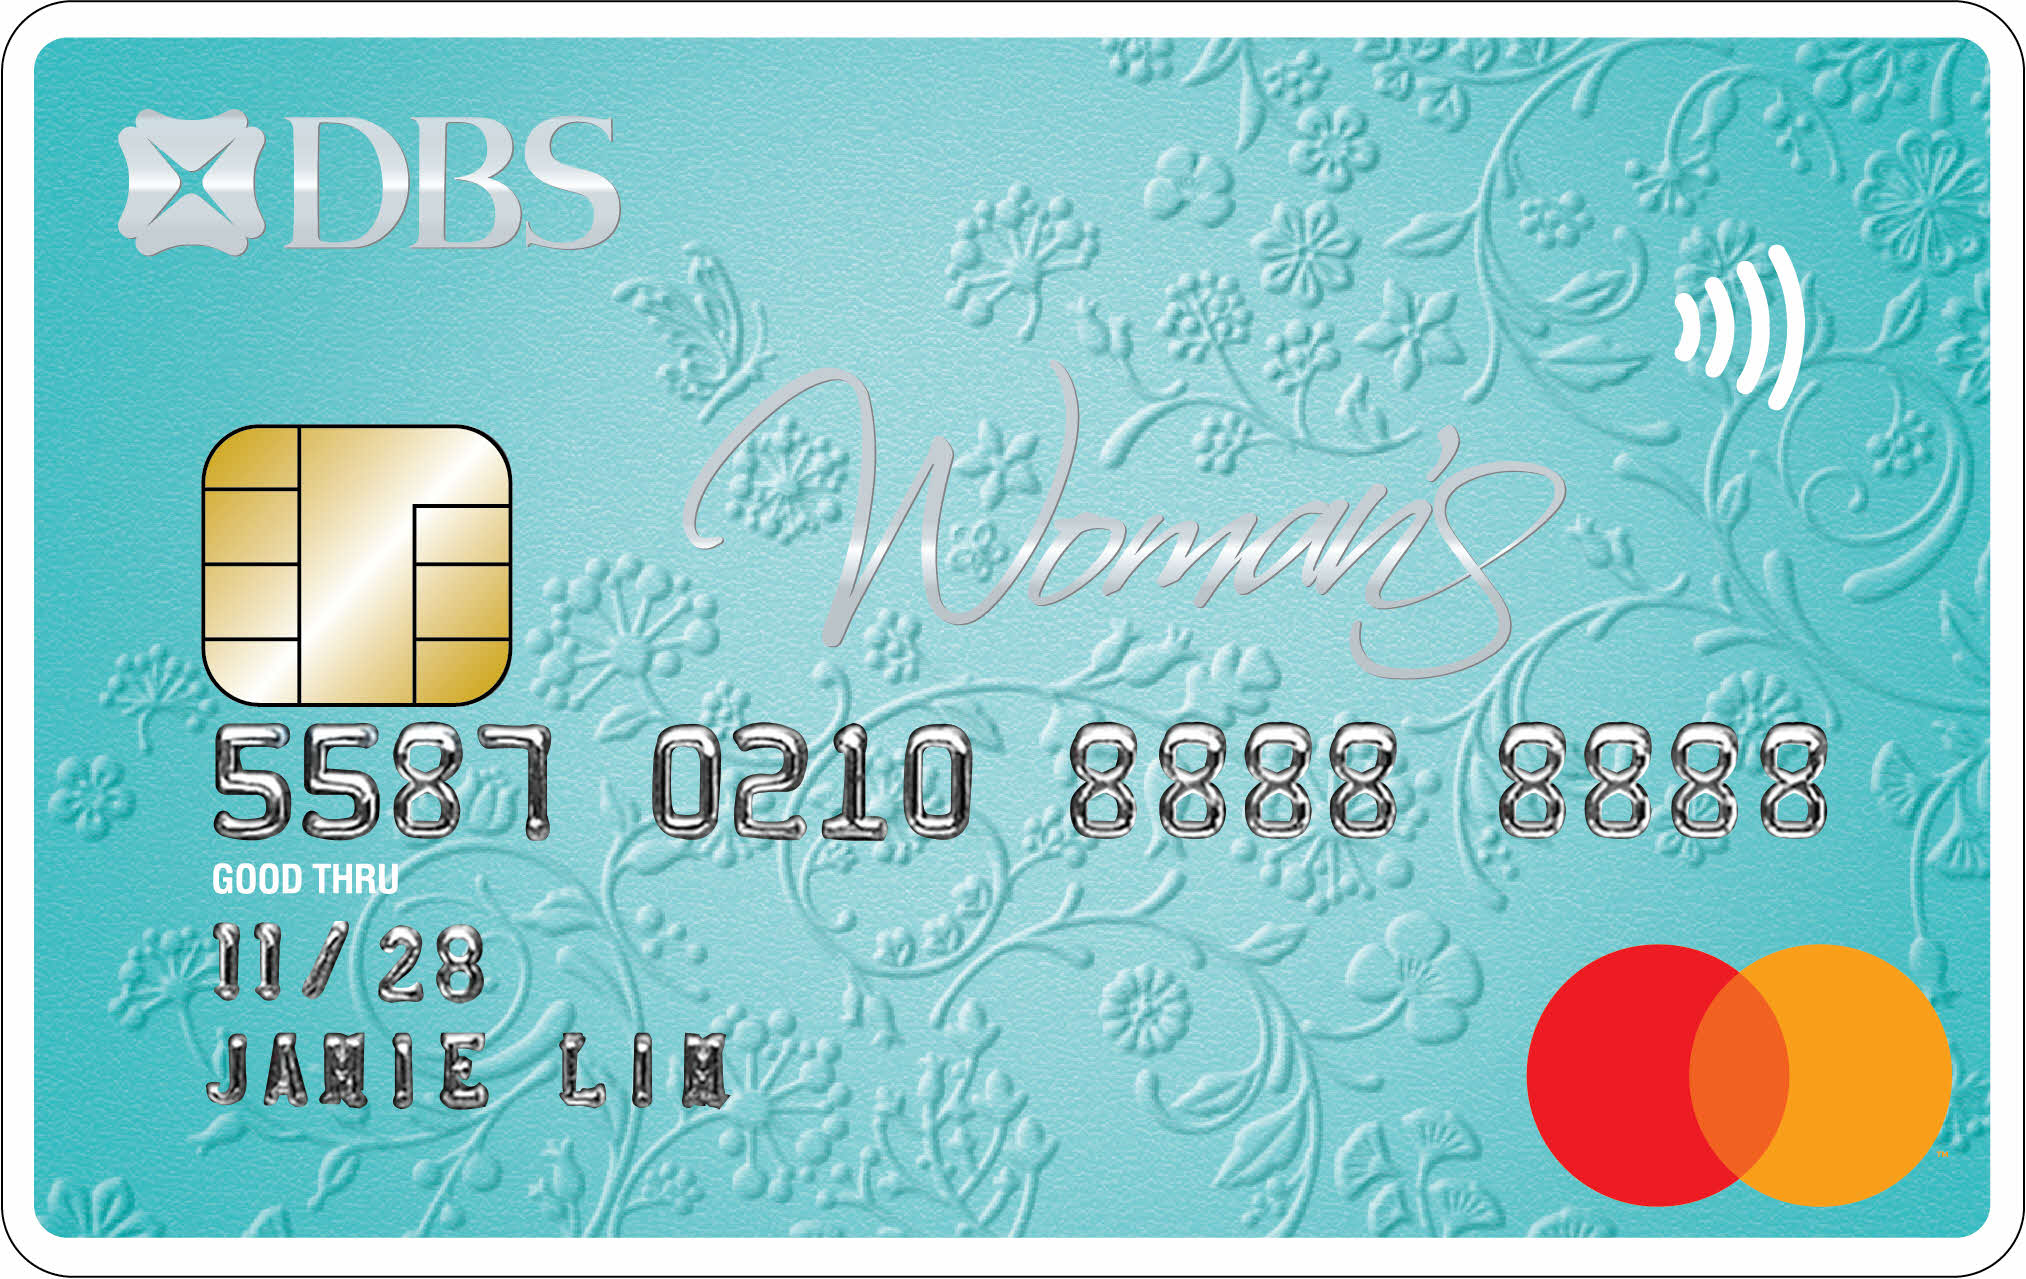 DBS Woman's World Card Singapore, DBS Woman's World Card, Overview of DBS Woman's World Card